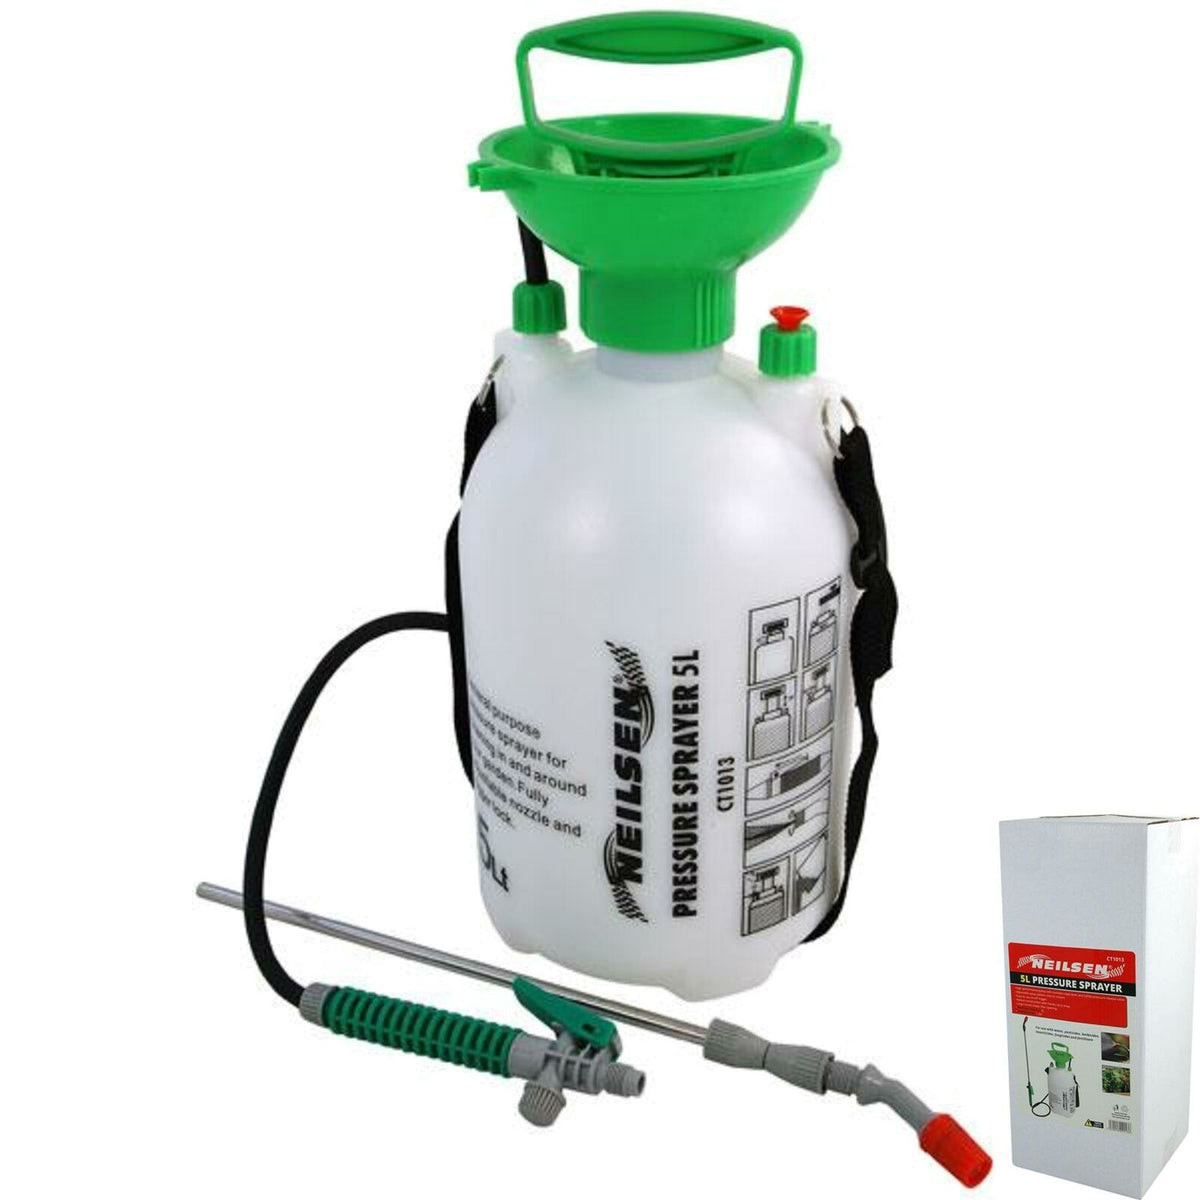 Neilsen Pressure Sprayer 5L Garden Lawn Pump Spray Fertilizer Weeds